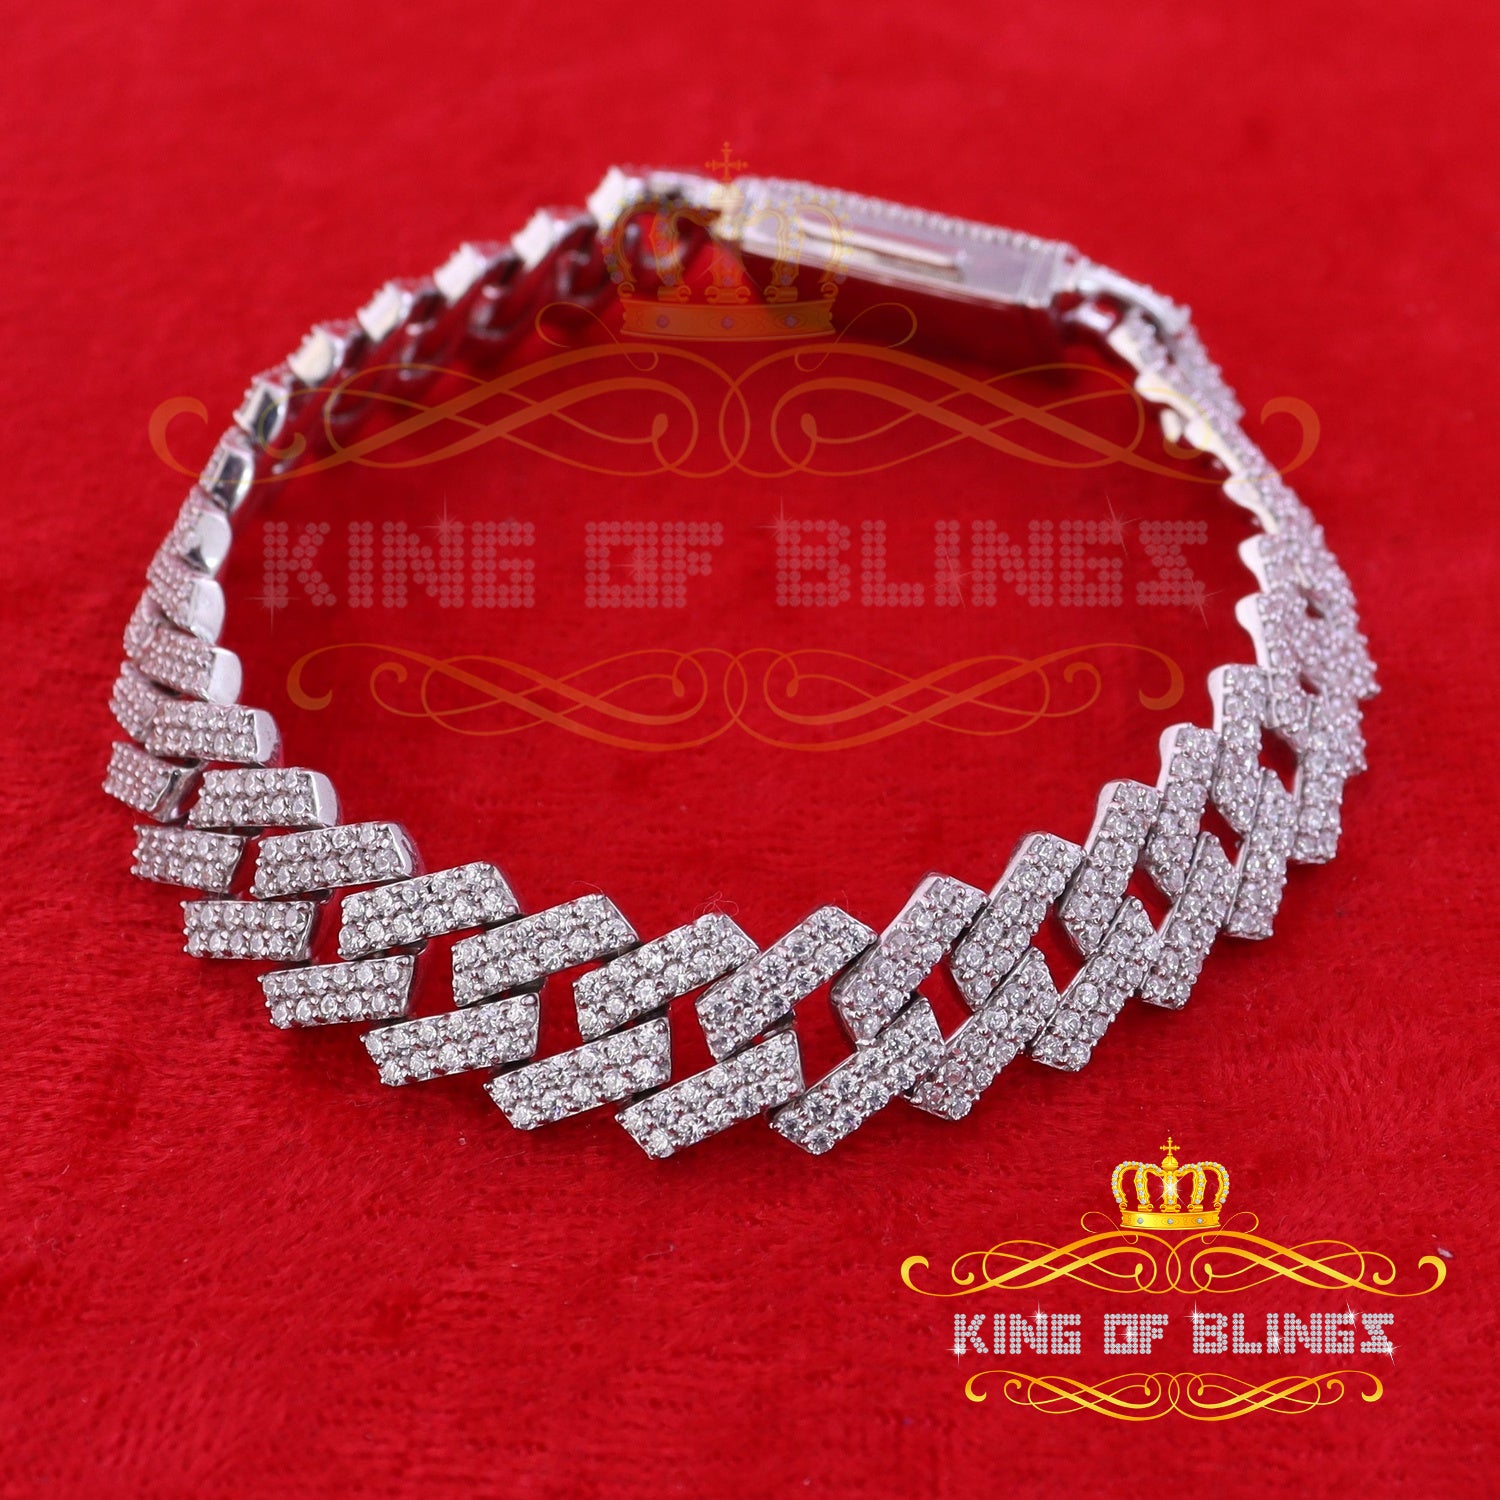 925 Silver 23.8ct Cubic Zirconia White Cuban Men's Bracelet SZ 9 inch/14mm Width KING OF BLINGS